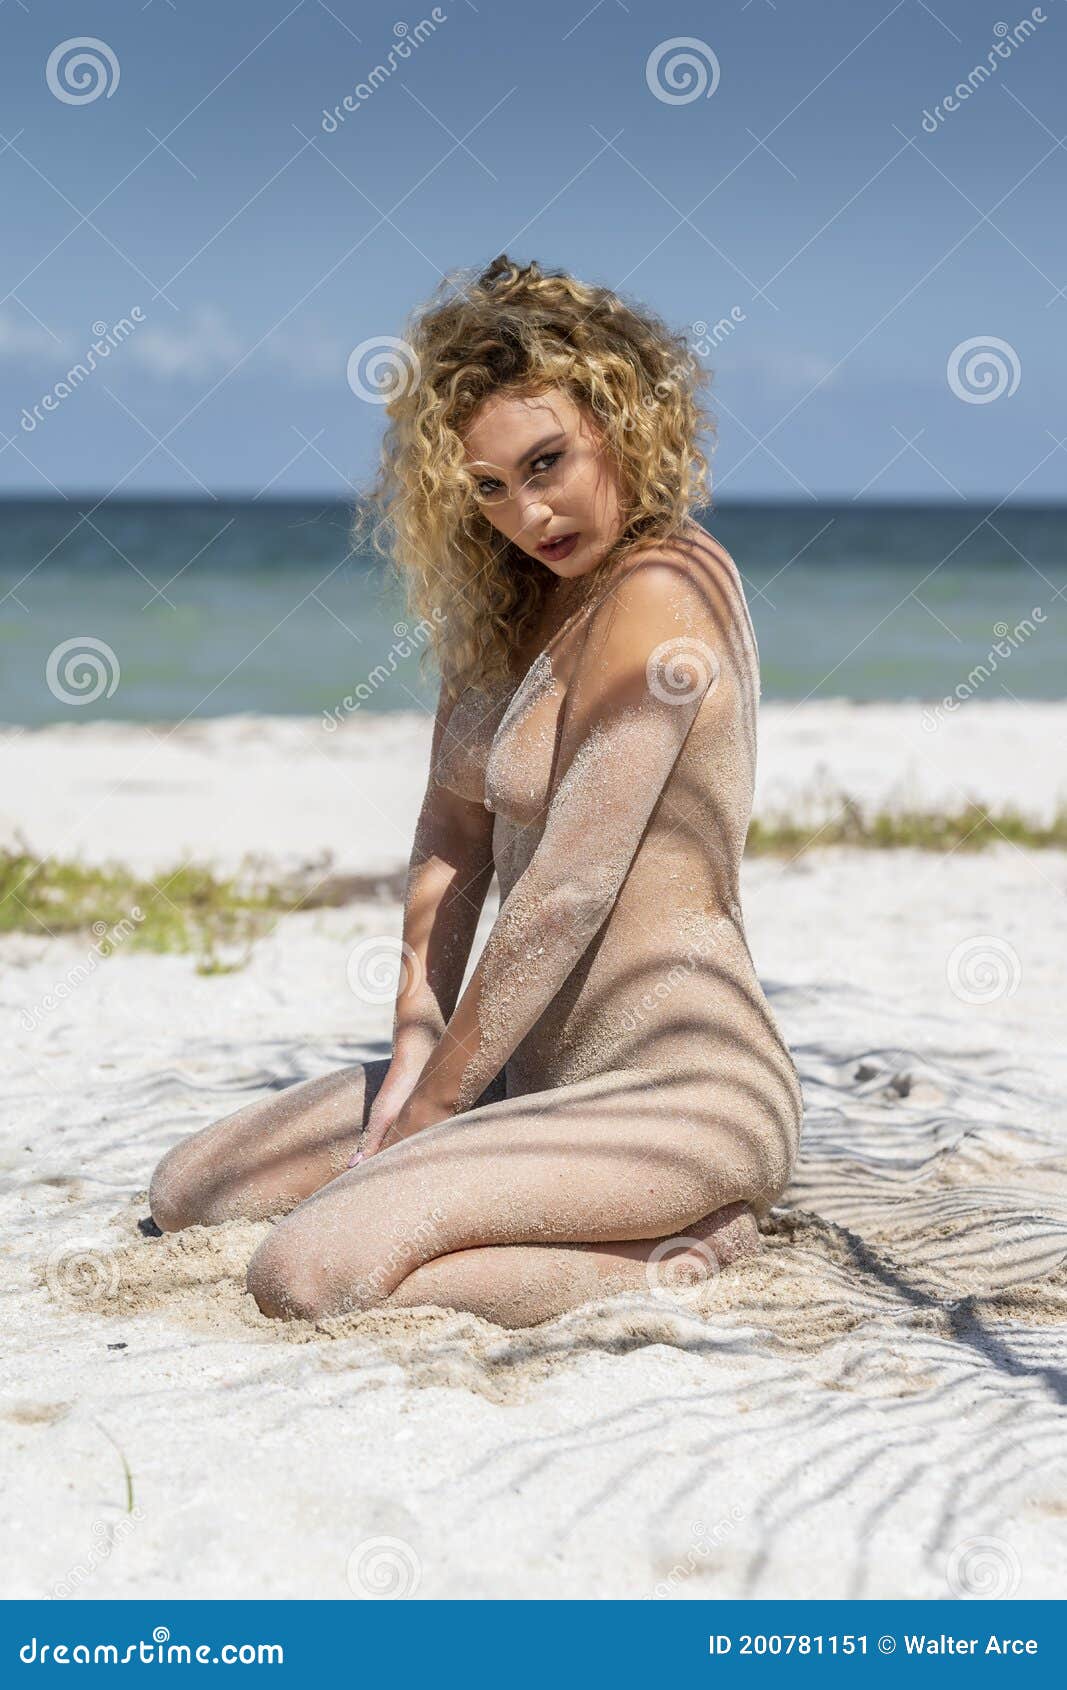 Nudes on the beach